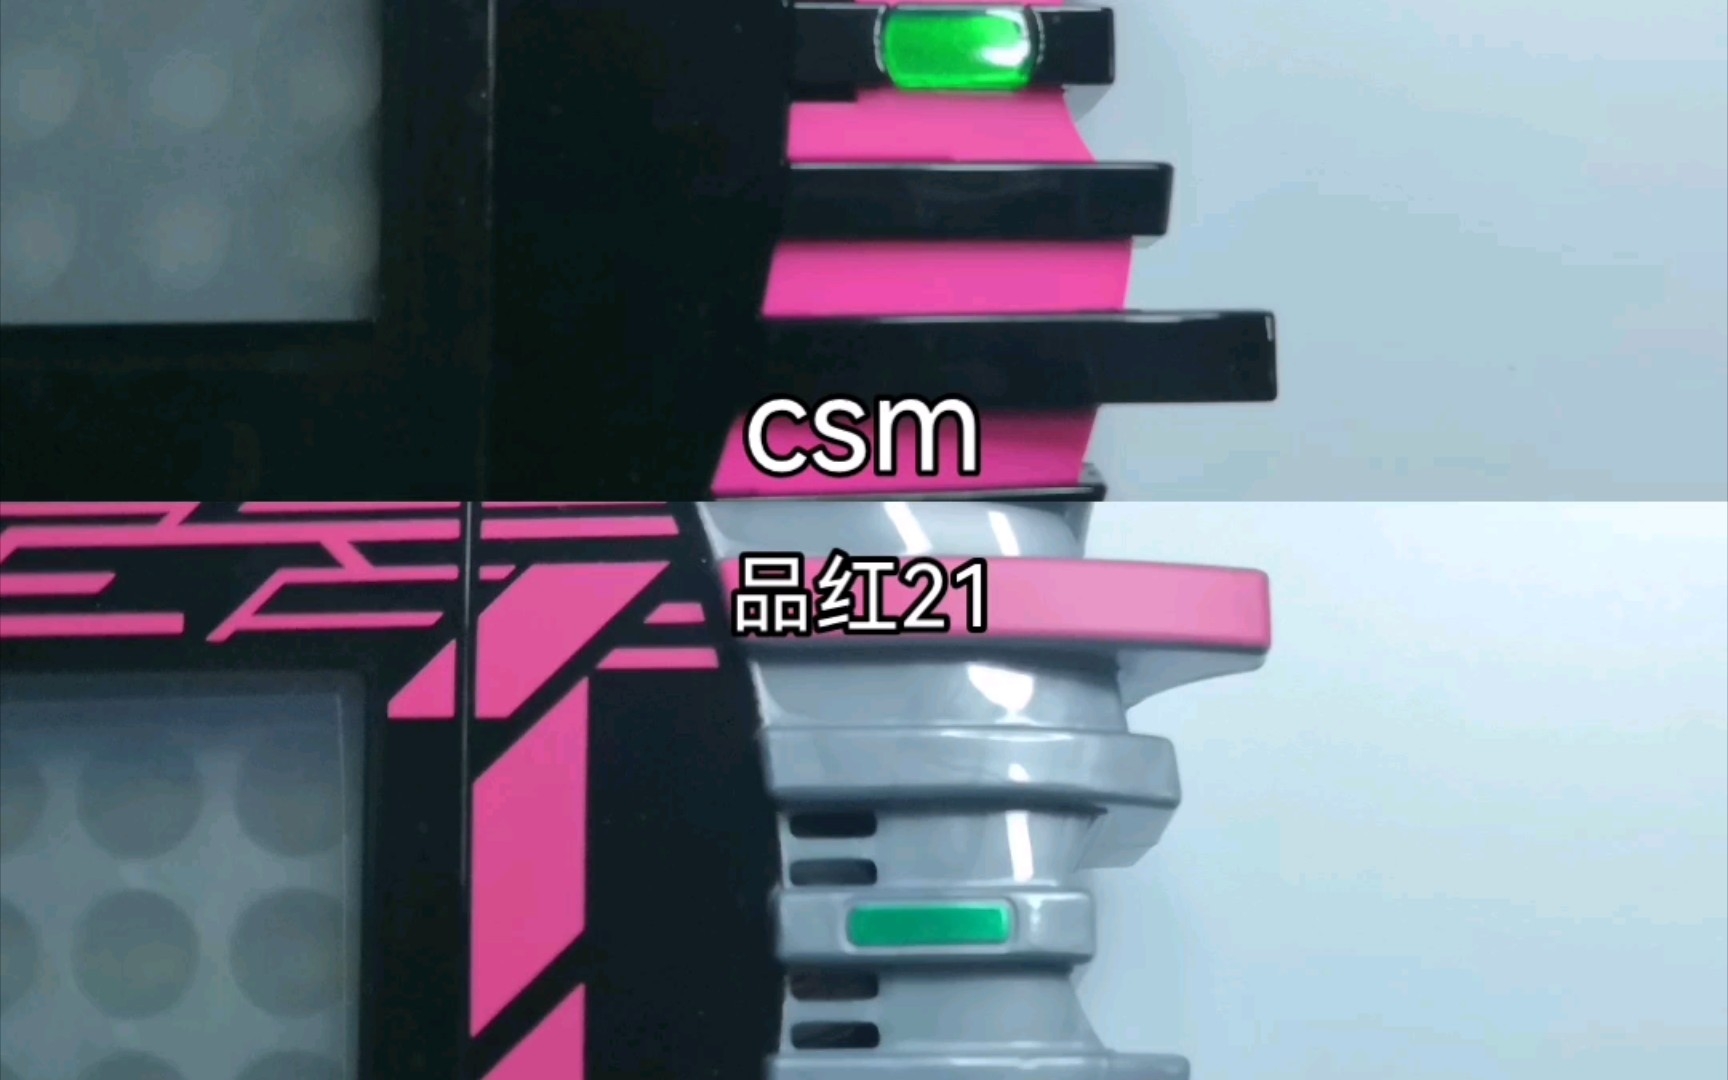 品红21与csm2.0触屏，越来越多的牌顶身上，现在看来那个看着更好看呢？